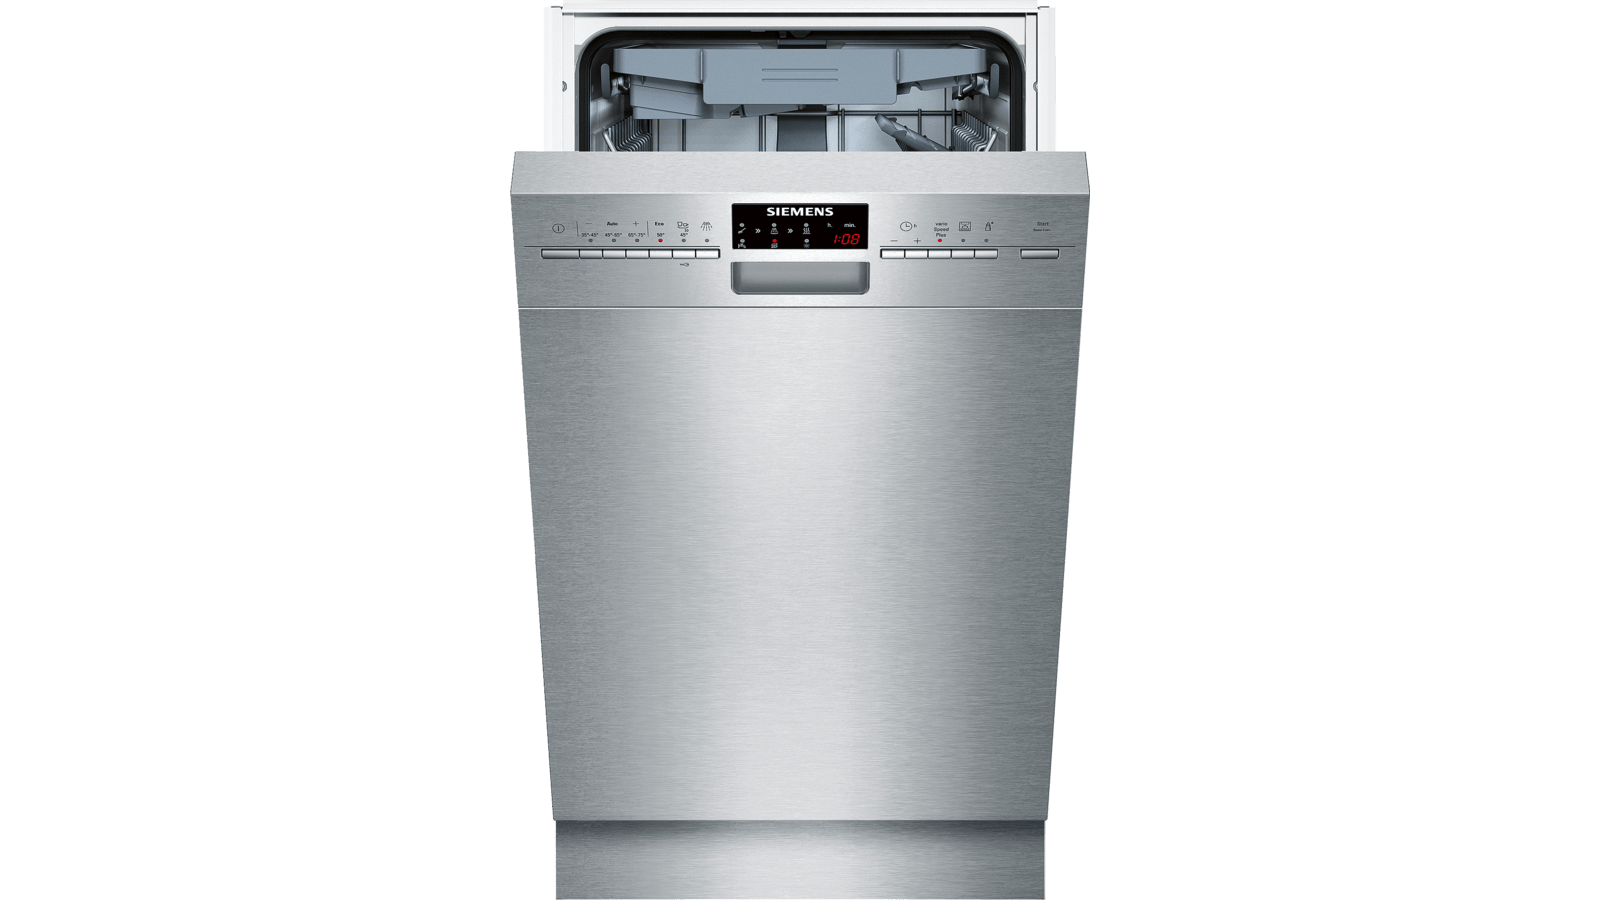 Посудомоечная машина рейтинг цена качество 60. Посудомоечная машина Siemens SR 256i00 te. Siemens iq500 посудомоечная машина. Посудомойка Сименс Электролюкс. Посудомойка Siemens SR 25226/06.